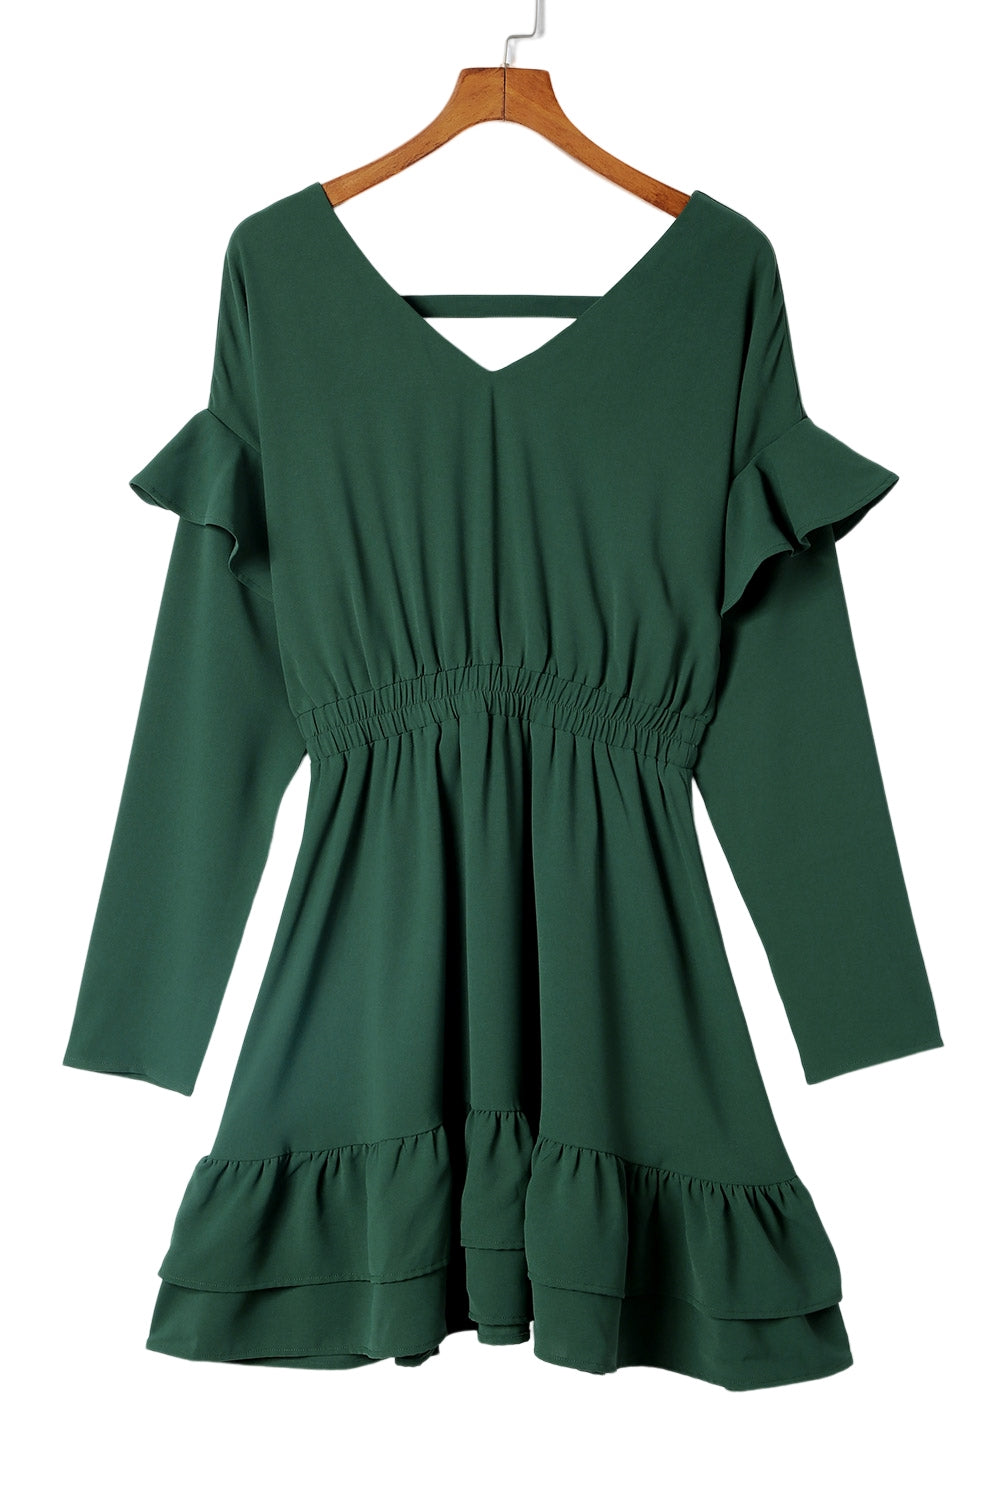 Grünes, einfarbiges, gerüschtes Minikleid mit V-Ausschnitt und hoher Taille